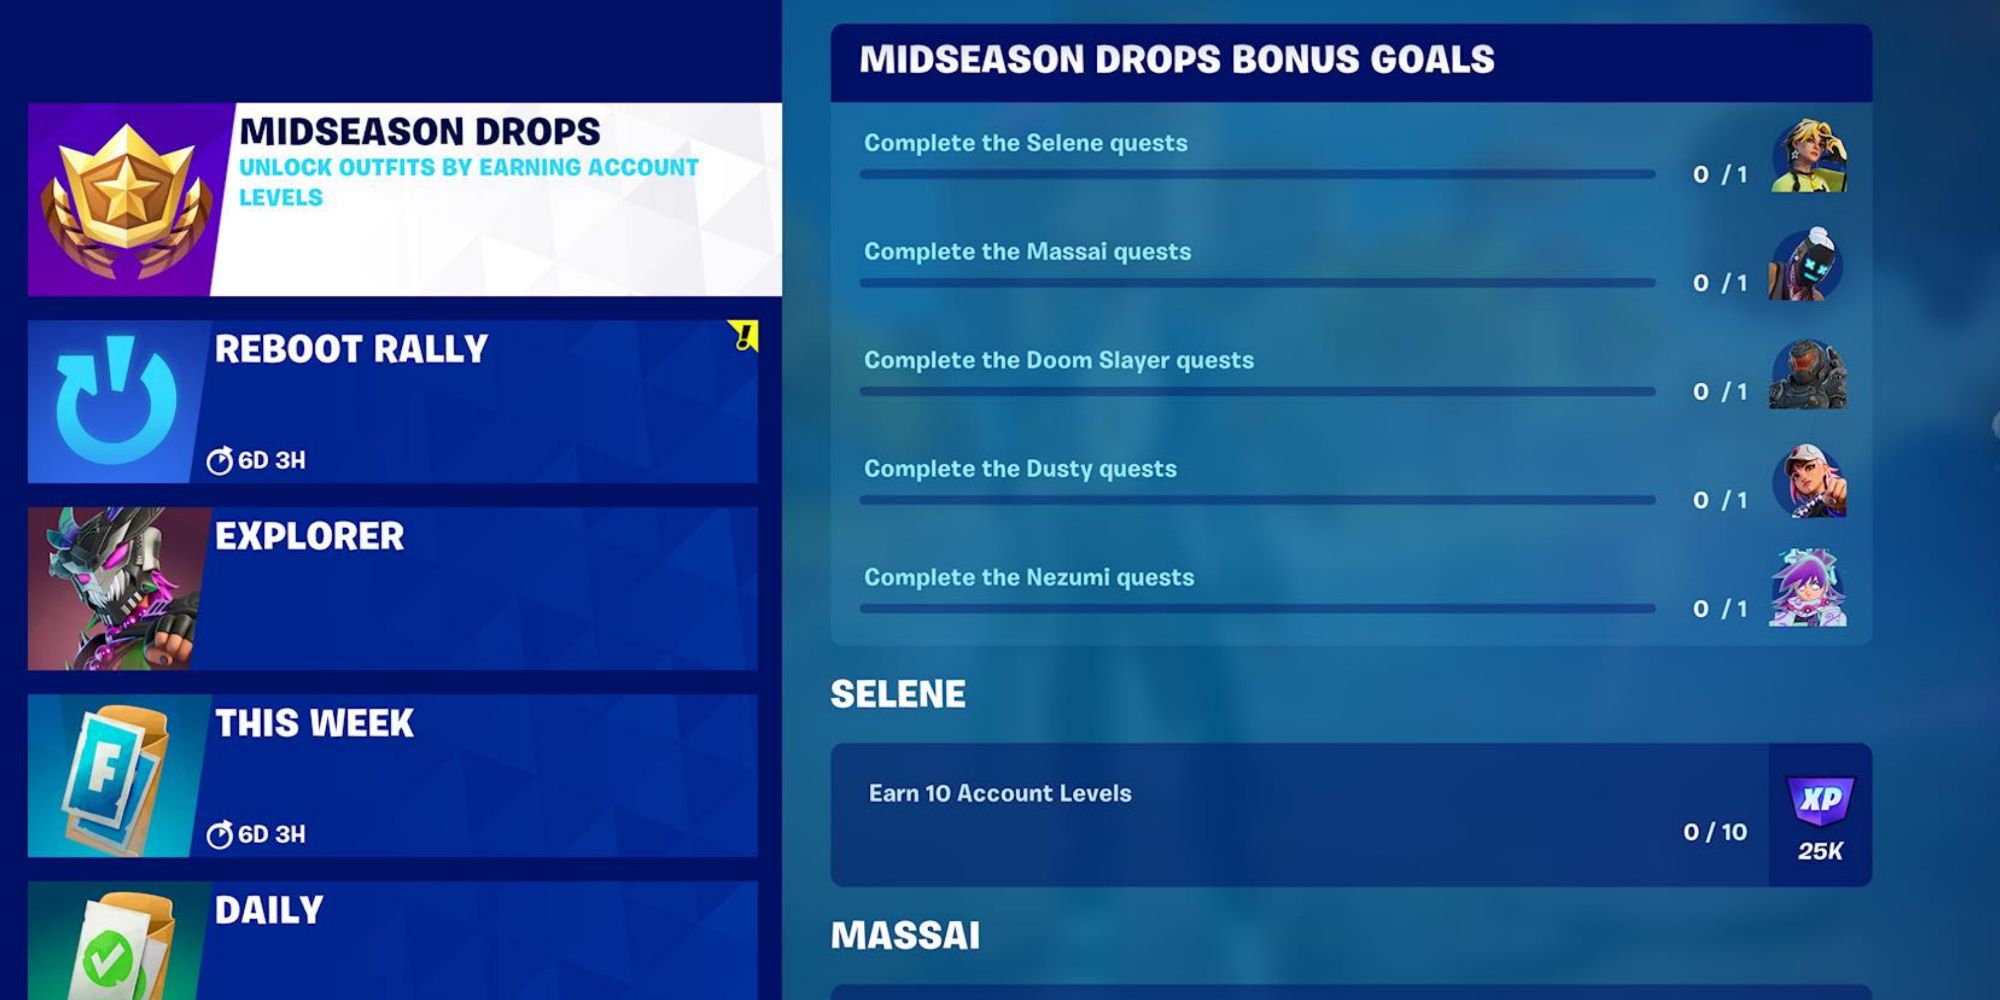 bonus goals for midseason drops